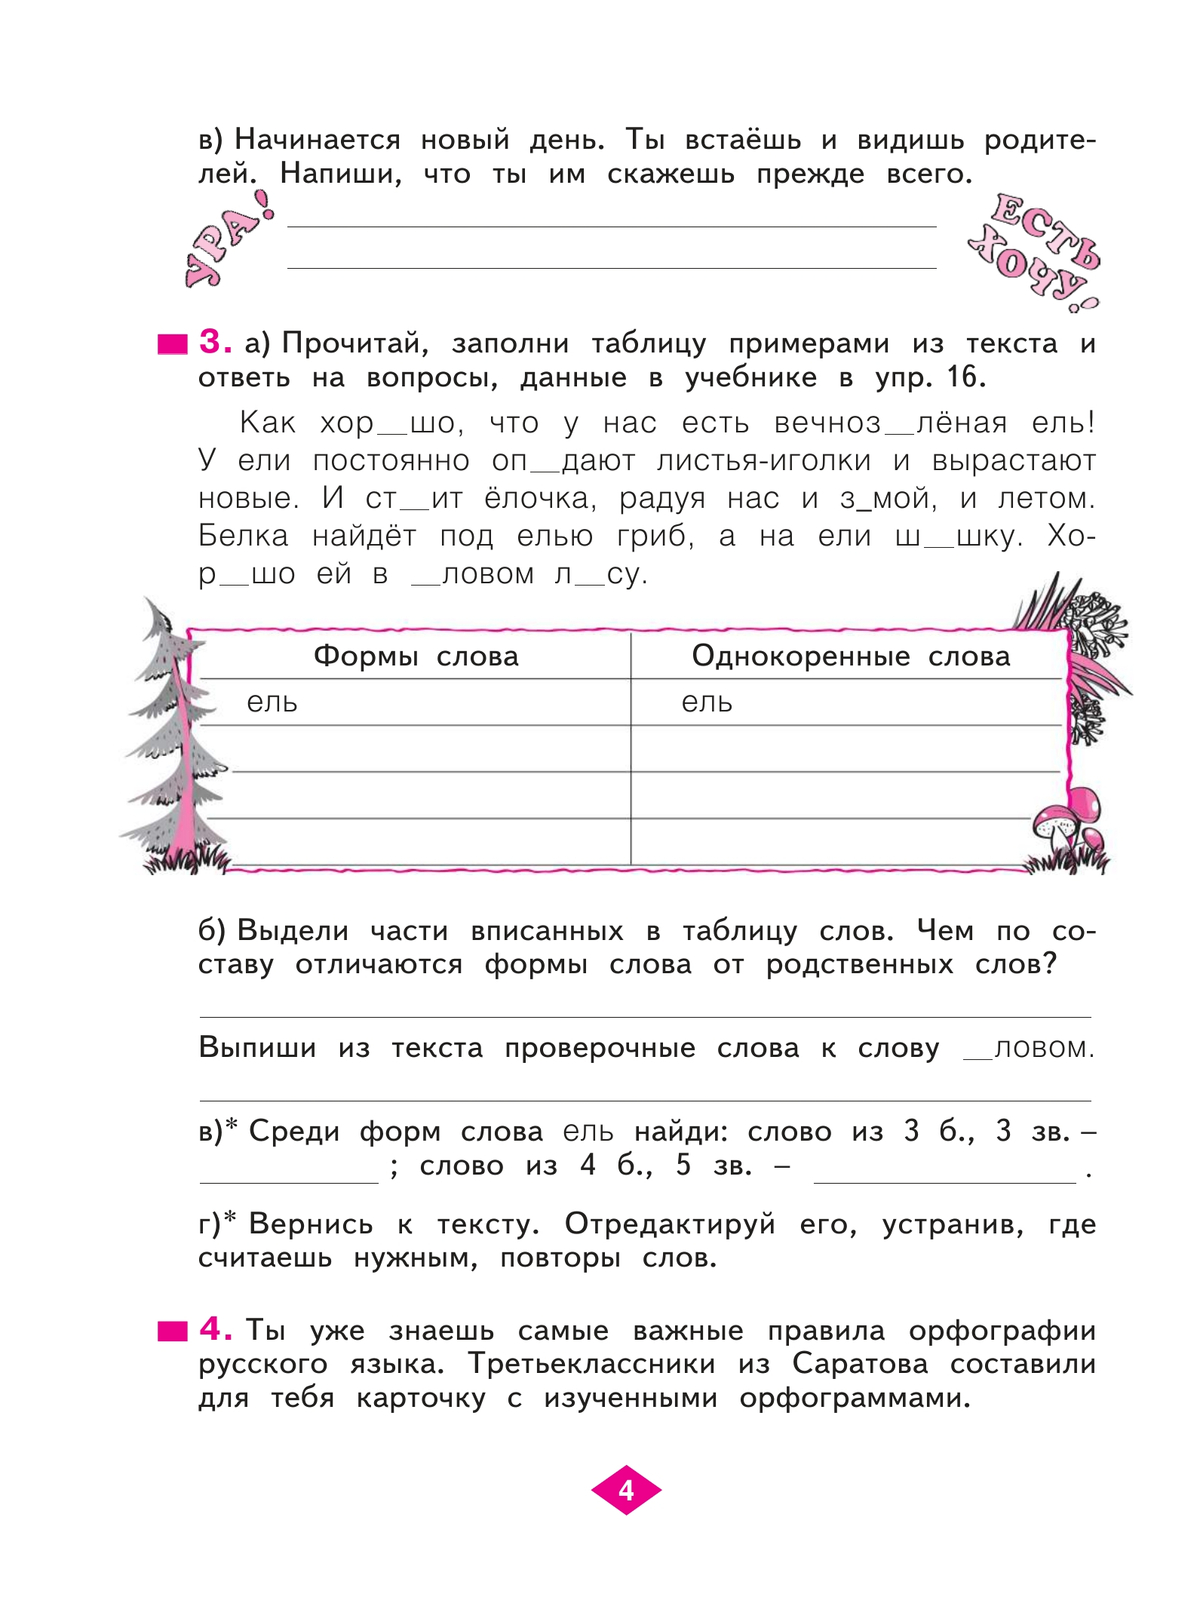 Русский язык. Рабочая тетрадь. 3 класс. В 4-х частях. Часть 1 2